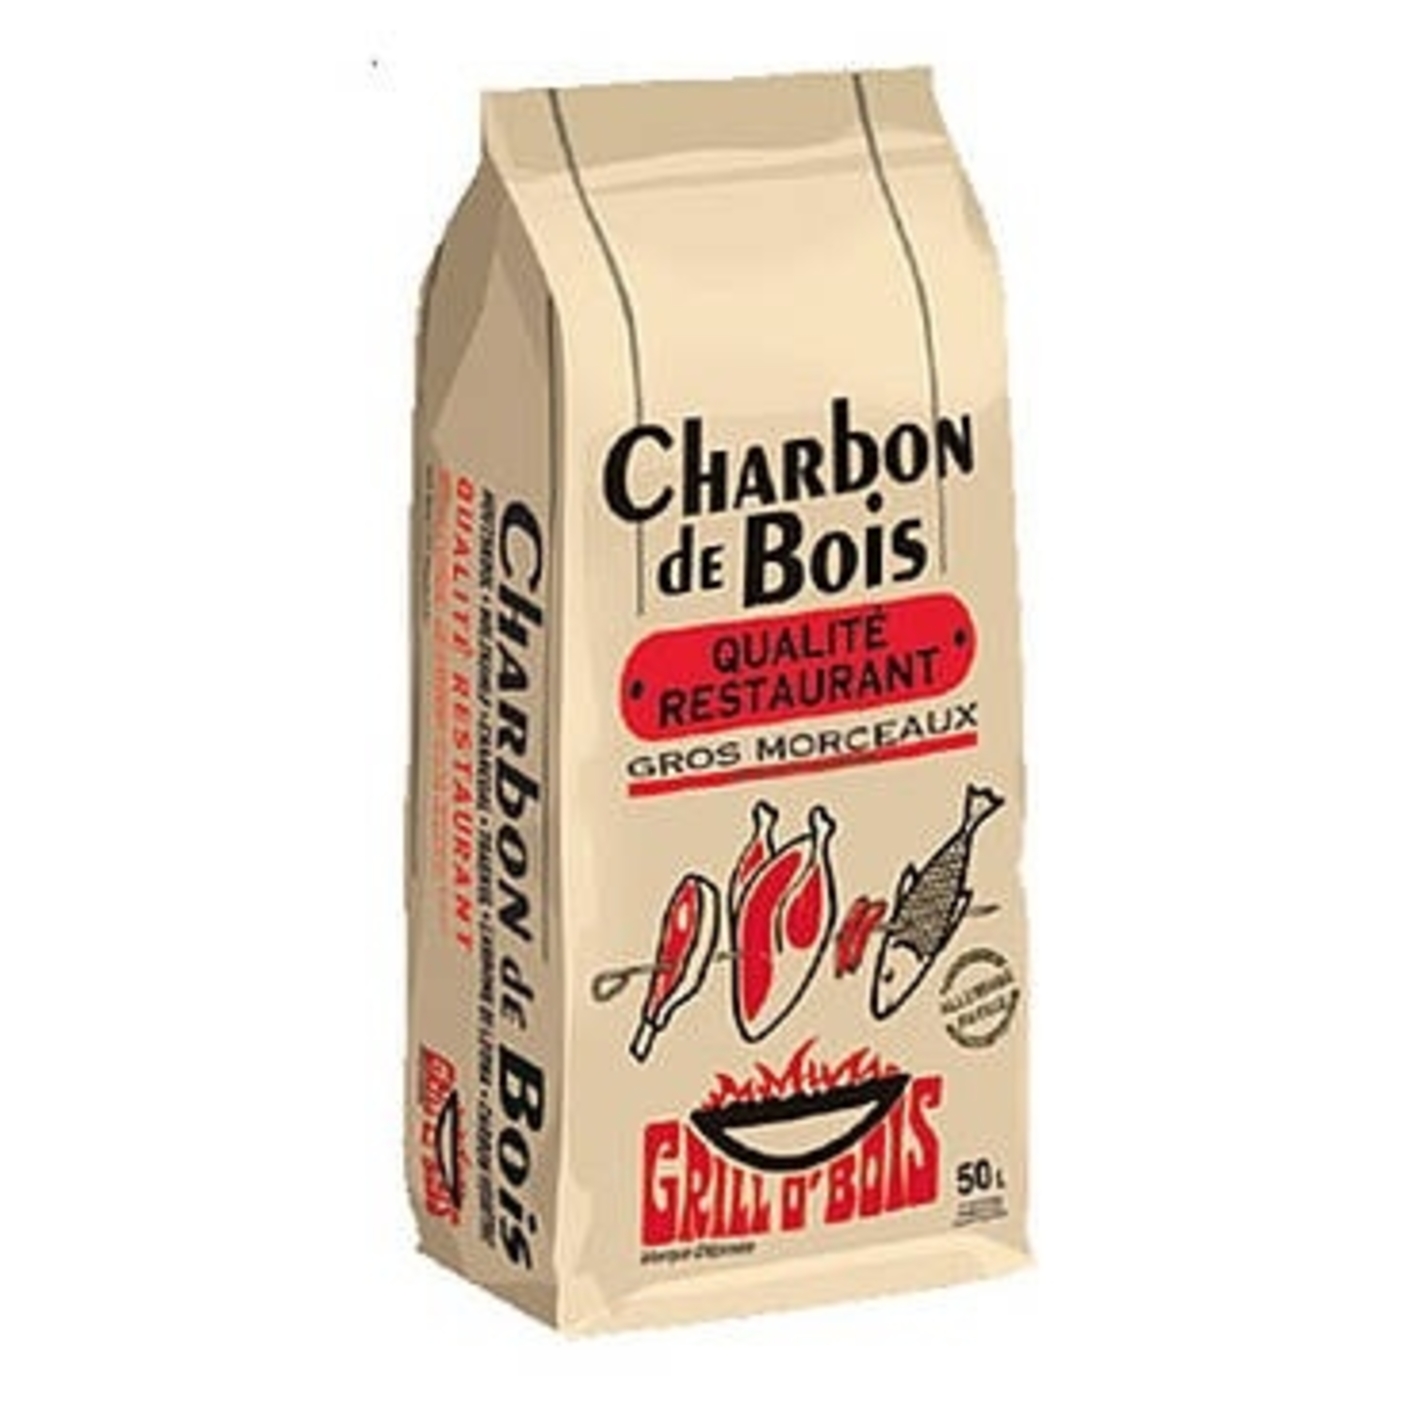 Charbon de bois - 50 litres - Grill O'Bois 